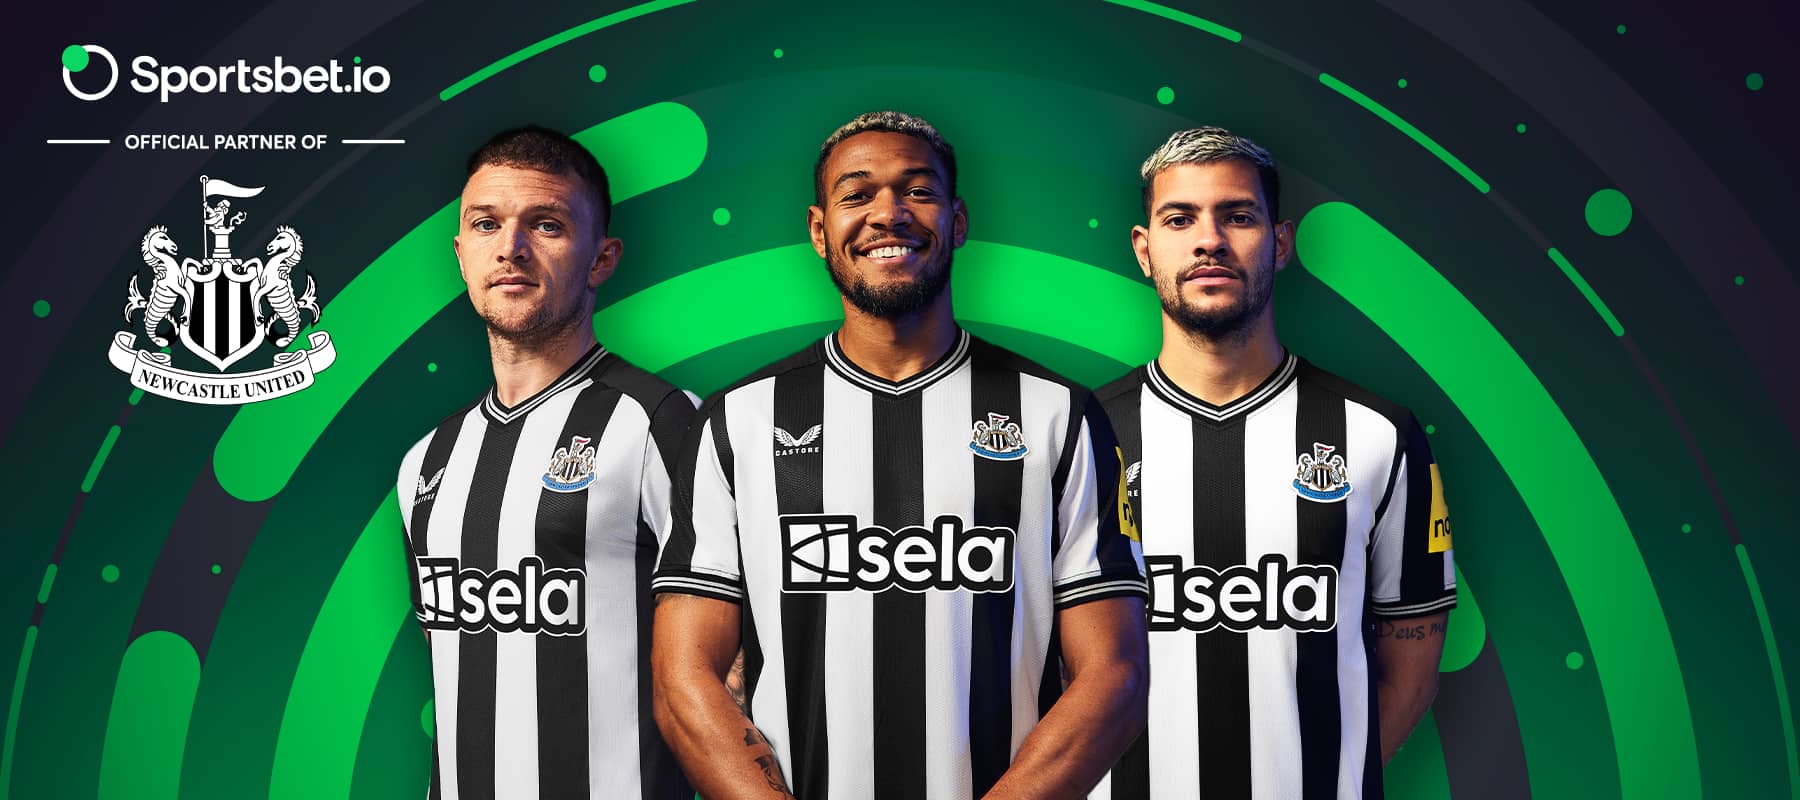 Daha yüksek zirvelere yöneliyoruz: Sportsbet.io ve Newcastle United'ın ortaklığı.